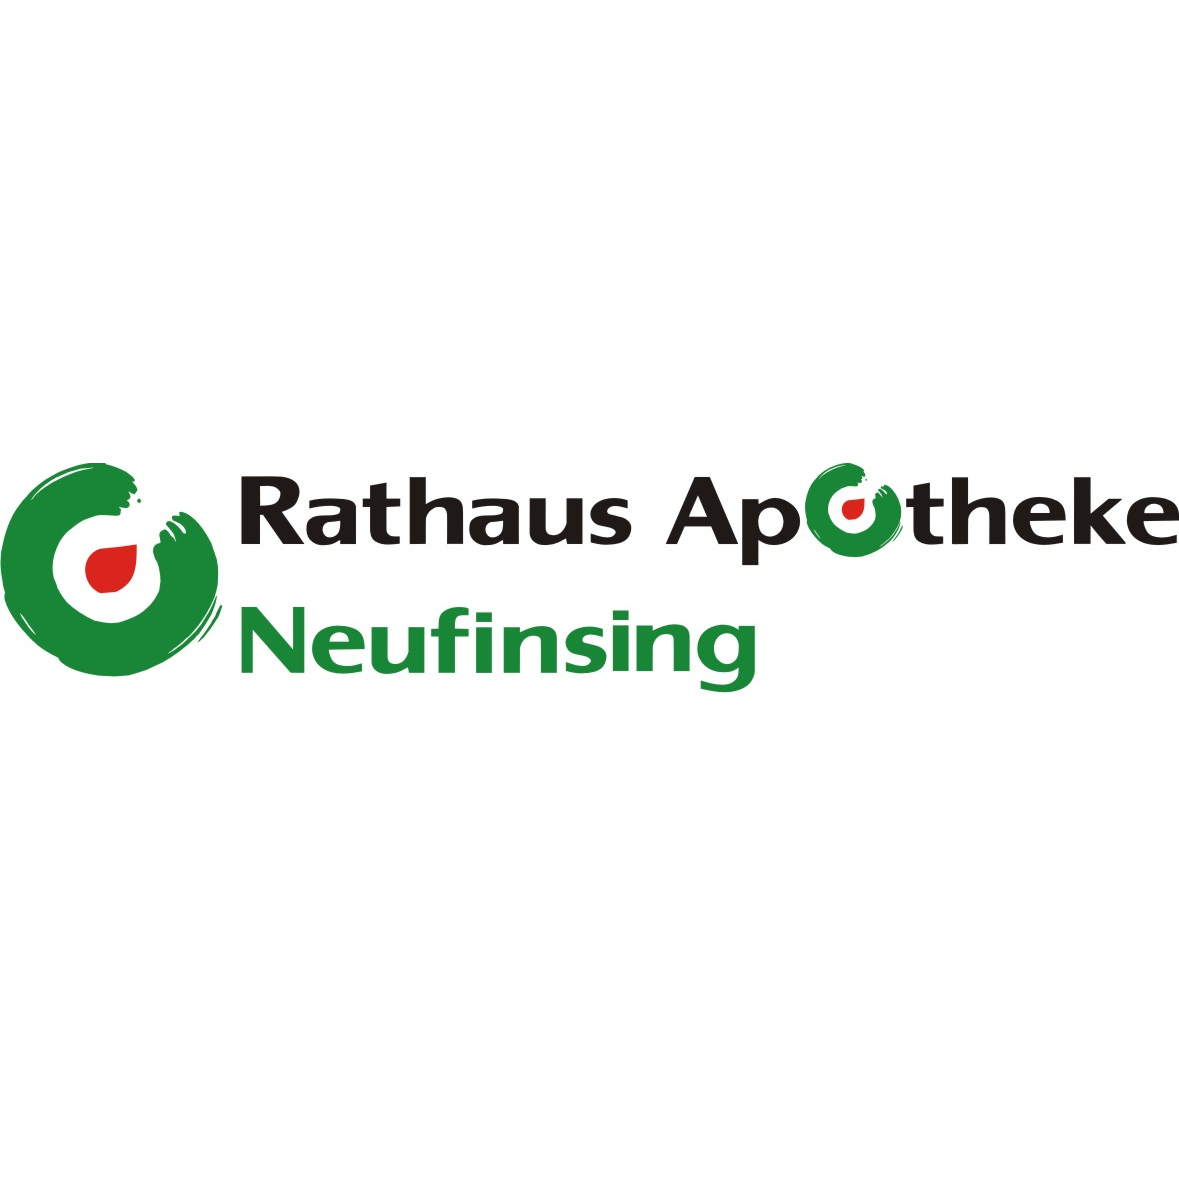 Rathaus Apotheke in Finsing - Logo